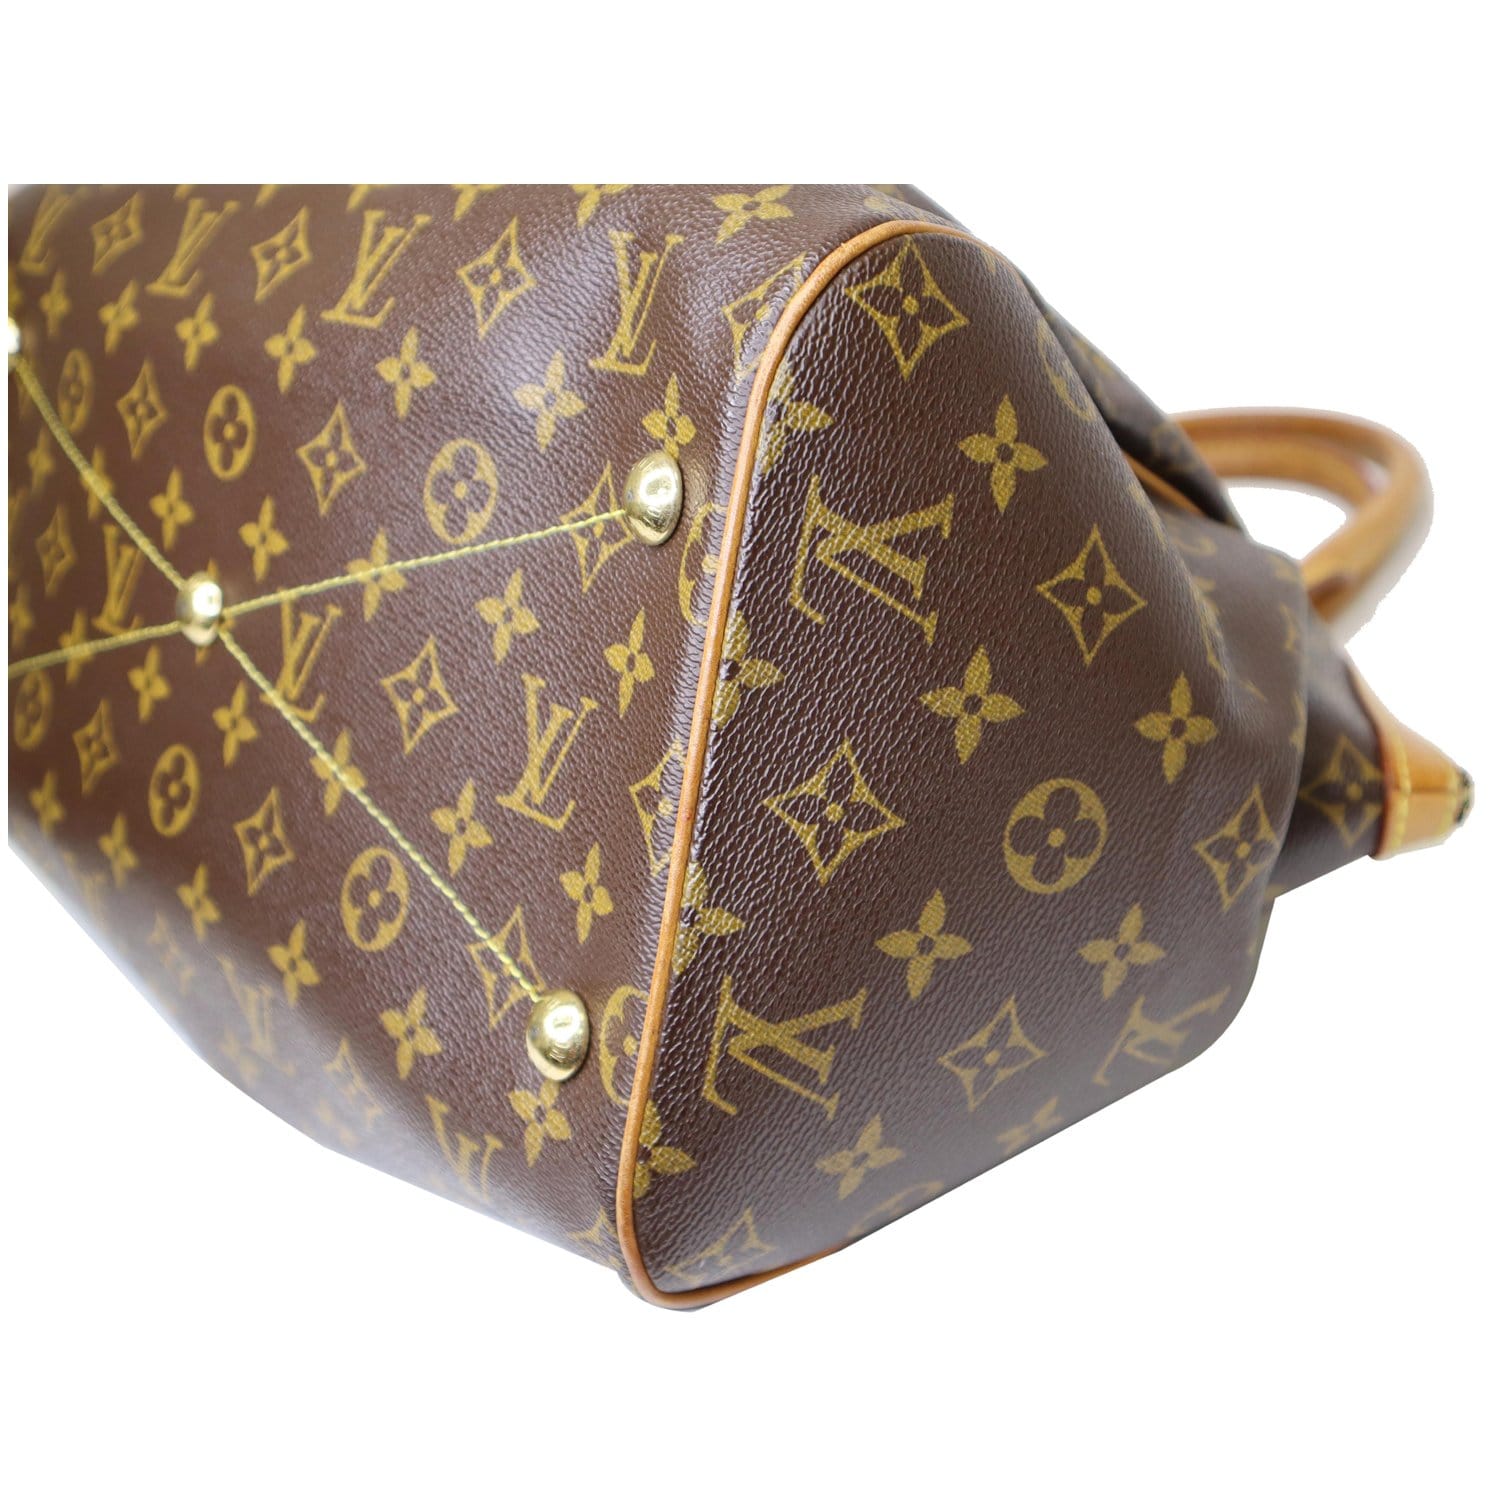 Louis Vuitton, Bags, Euc Louis Vuitton Tivoli Gm Handbag